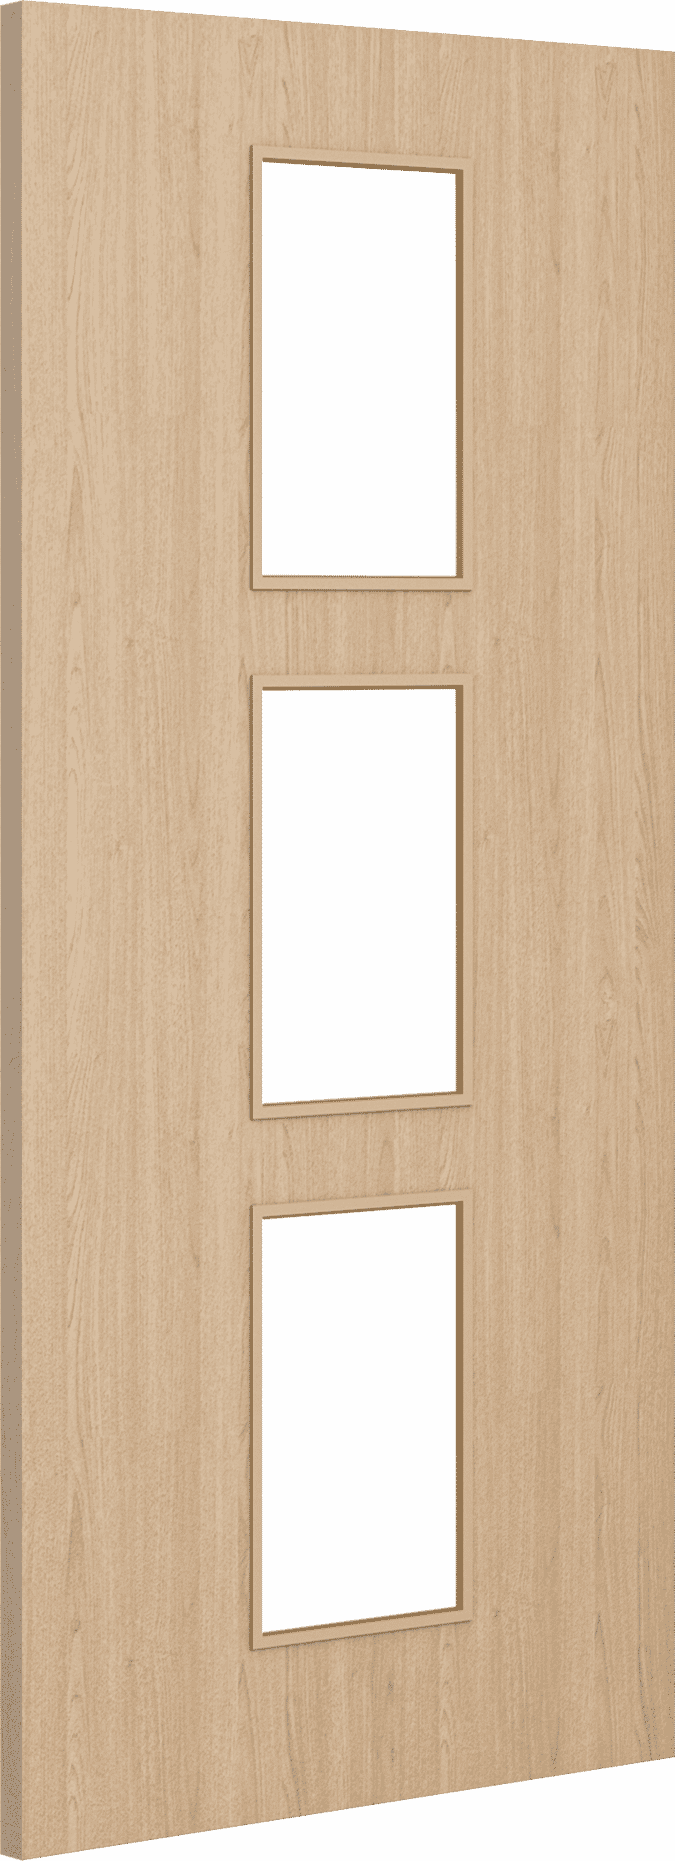 2040mm x 826mm x 54mm Architectural Oak 11 Clear Glazed - Prefinished FD60 Fire Door Blank